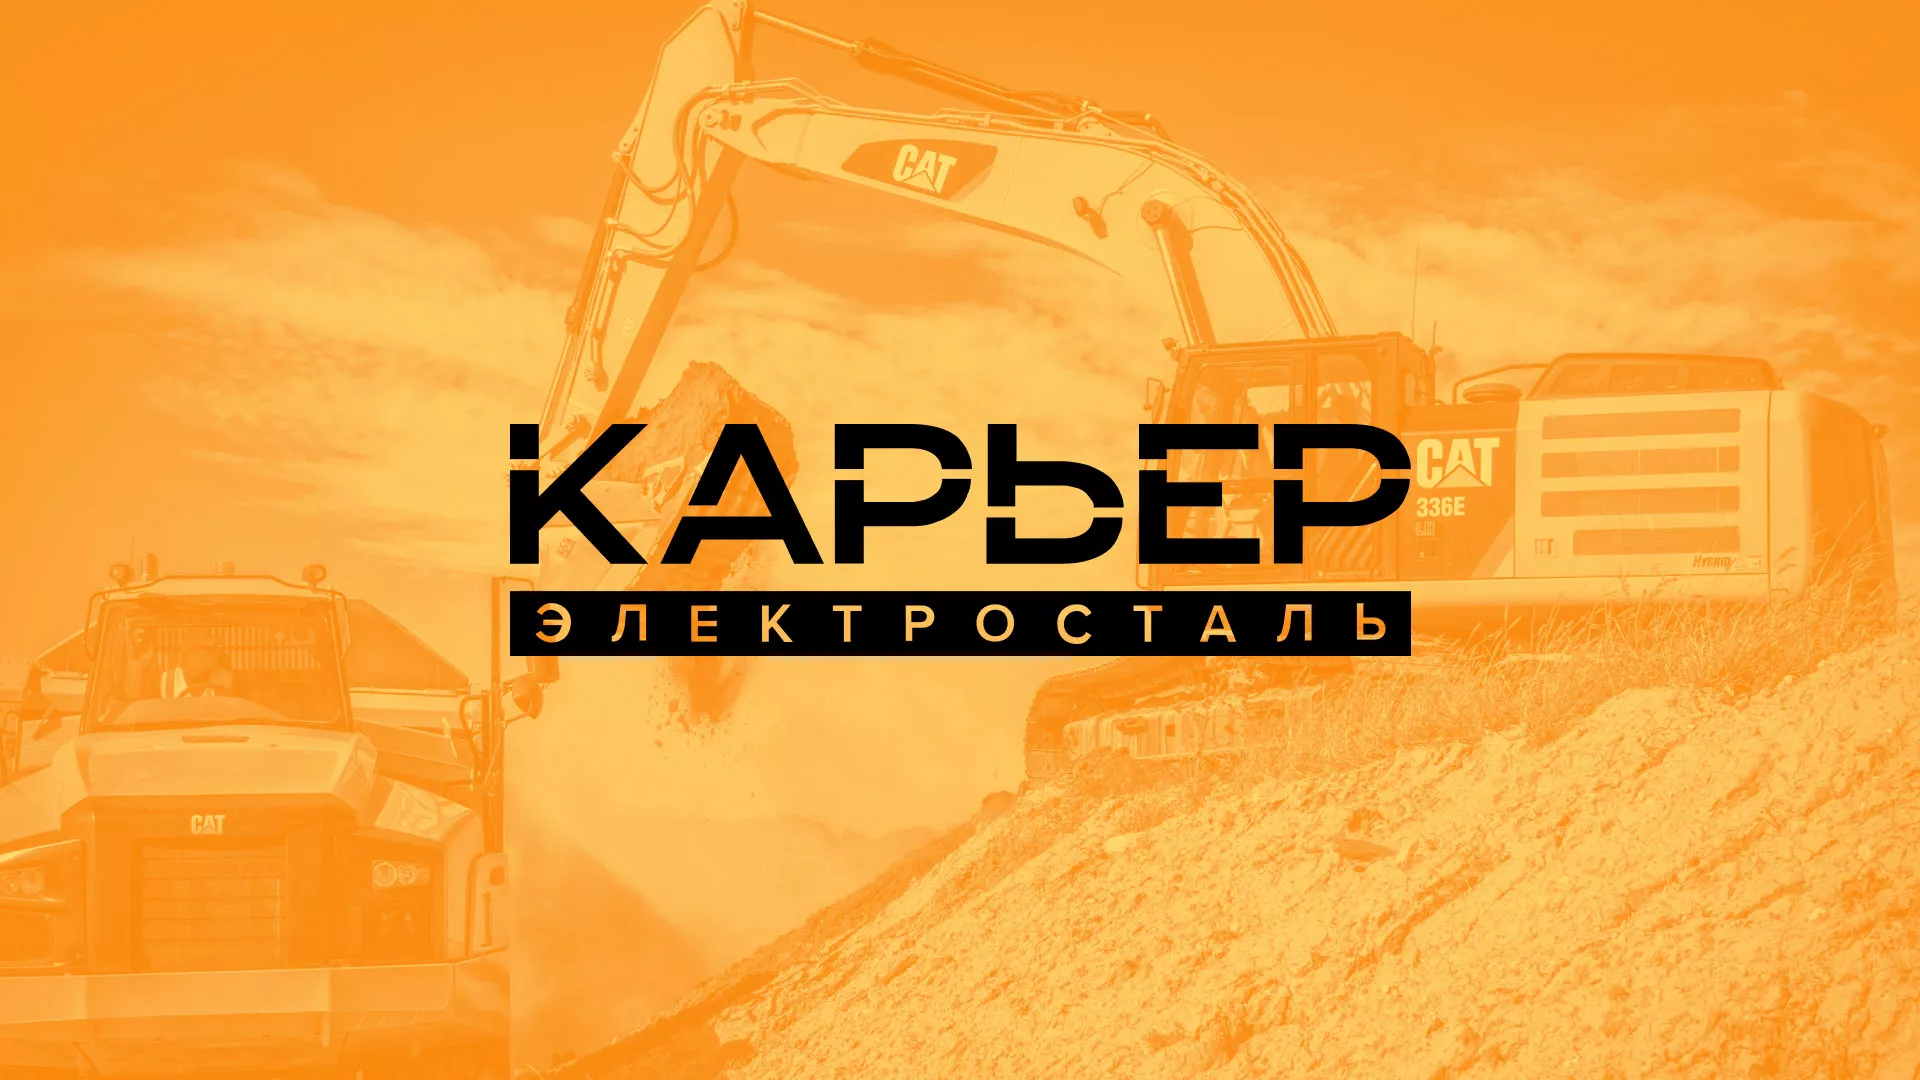 Разработка сайта по продаже нерудных материалов «Карьер» в Славянске-на-Кубани